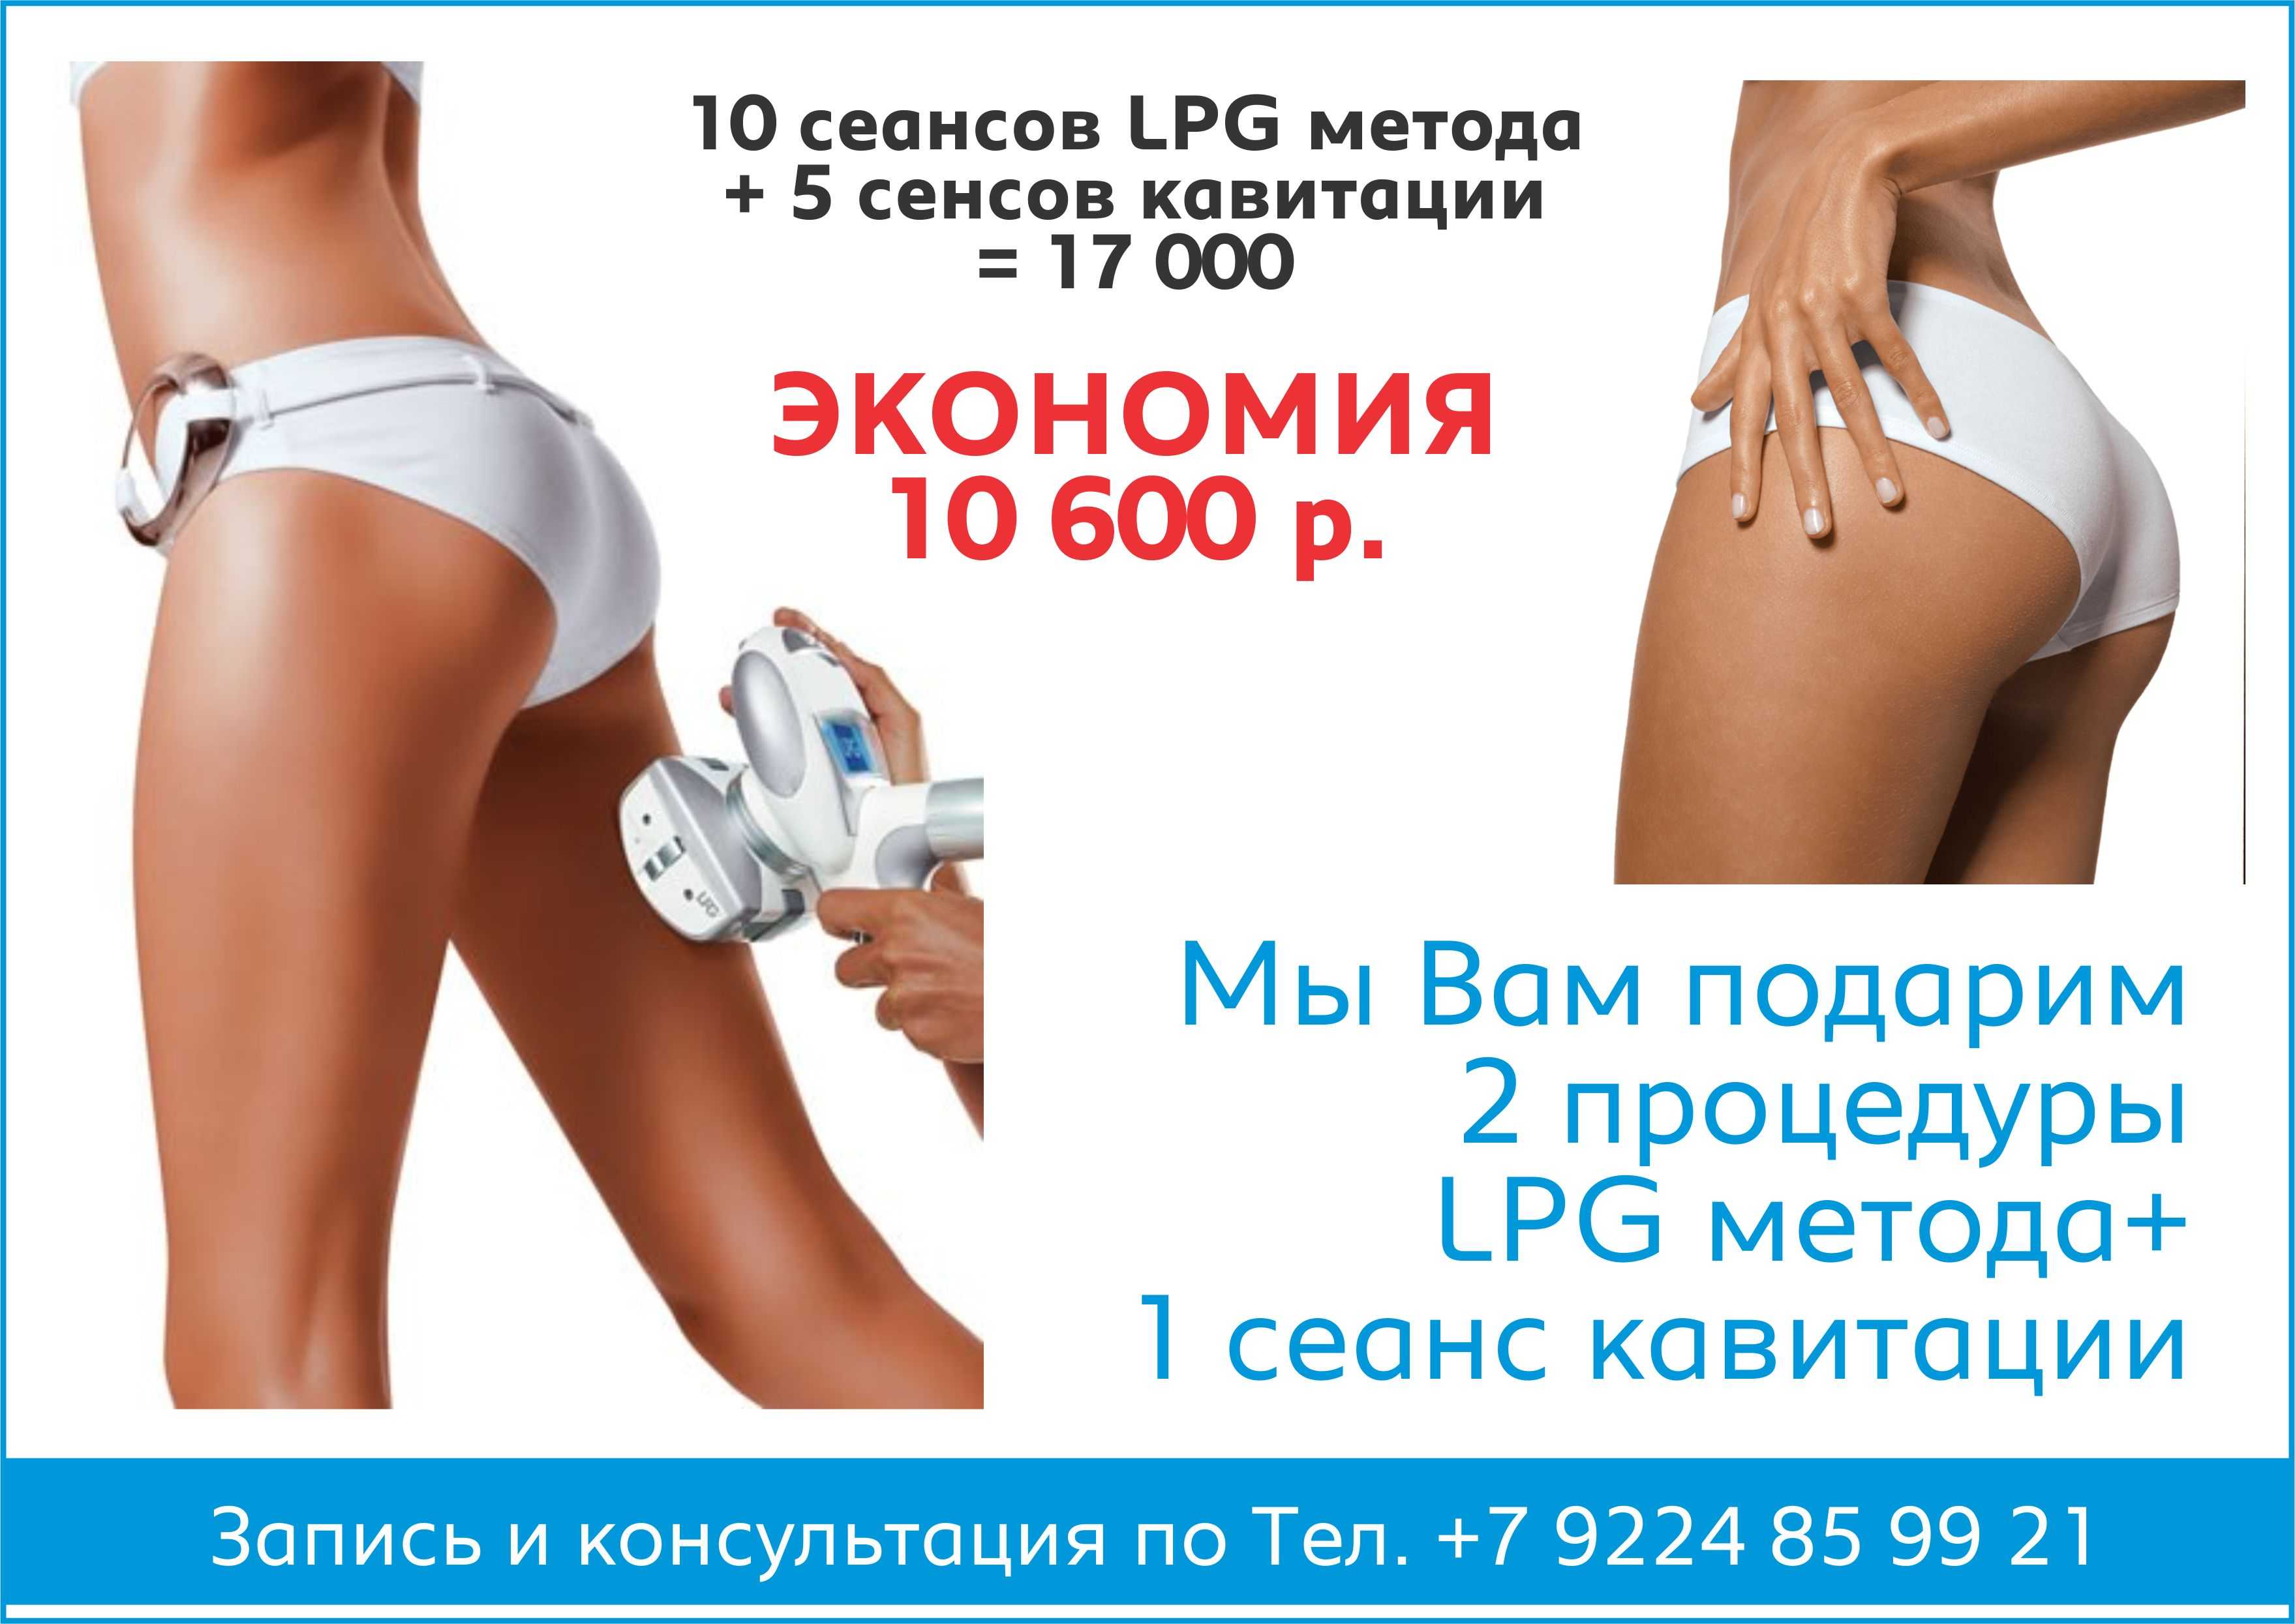 Lpg массаж противопоказания и побочные. Вакуумный массаж лпж. Ролико-вакуумный массаж LPG. Аппаратный массаж для похудения LPG. LPG массаж акция.